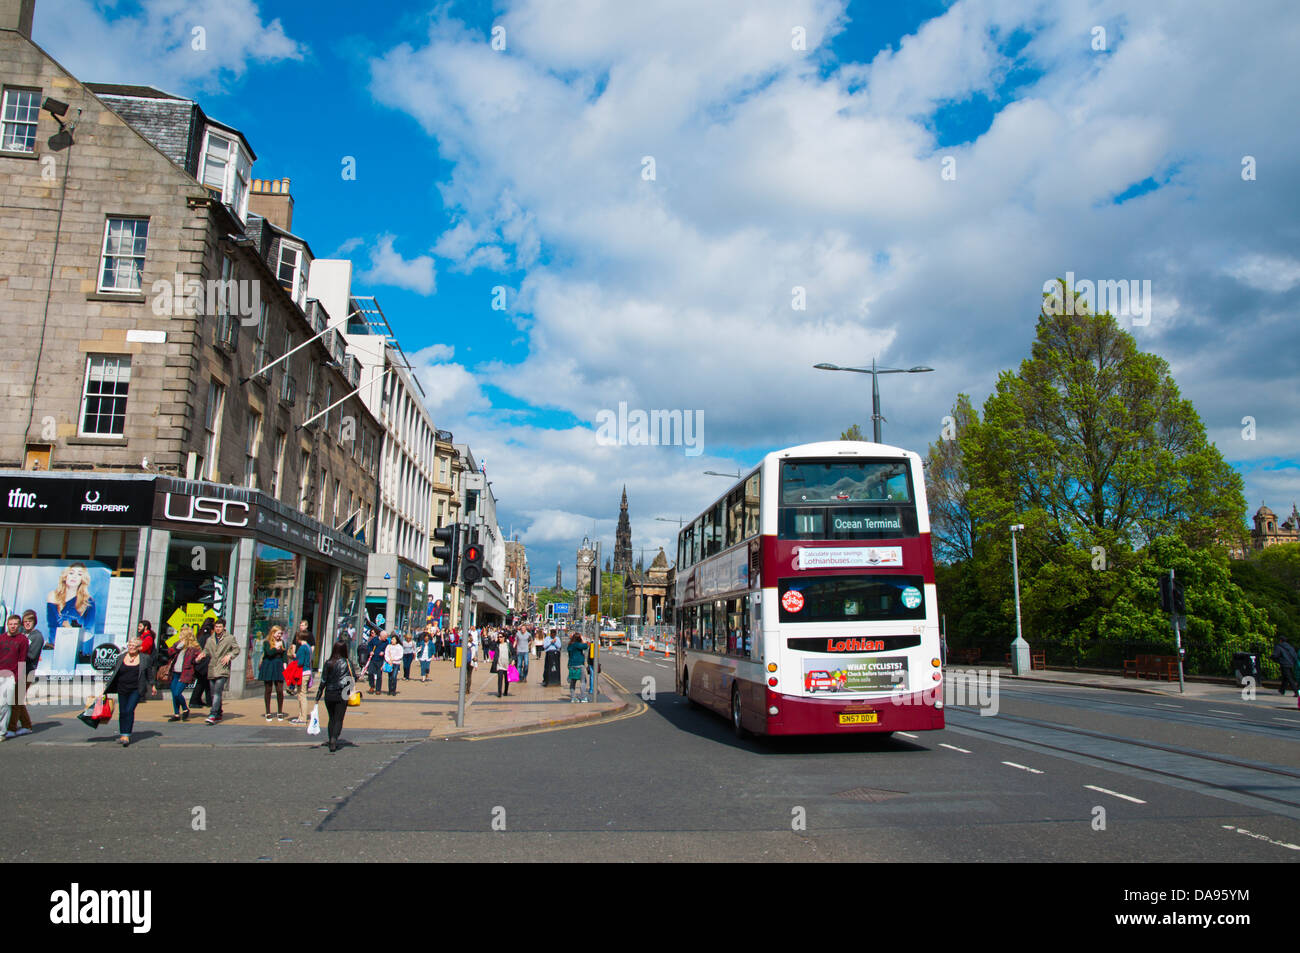 Princes Street New Town Edinburgh Schottland Großbritannien UK Mitteleuropa Stockfoto